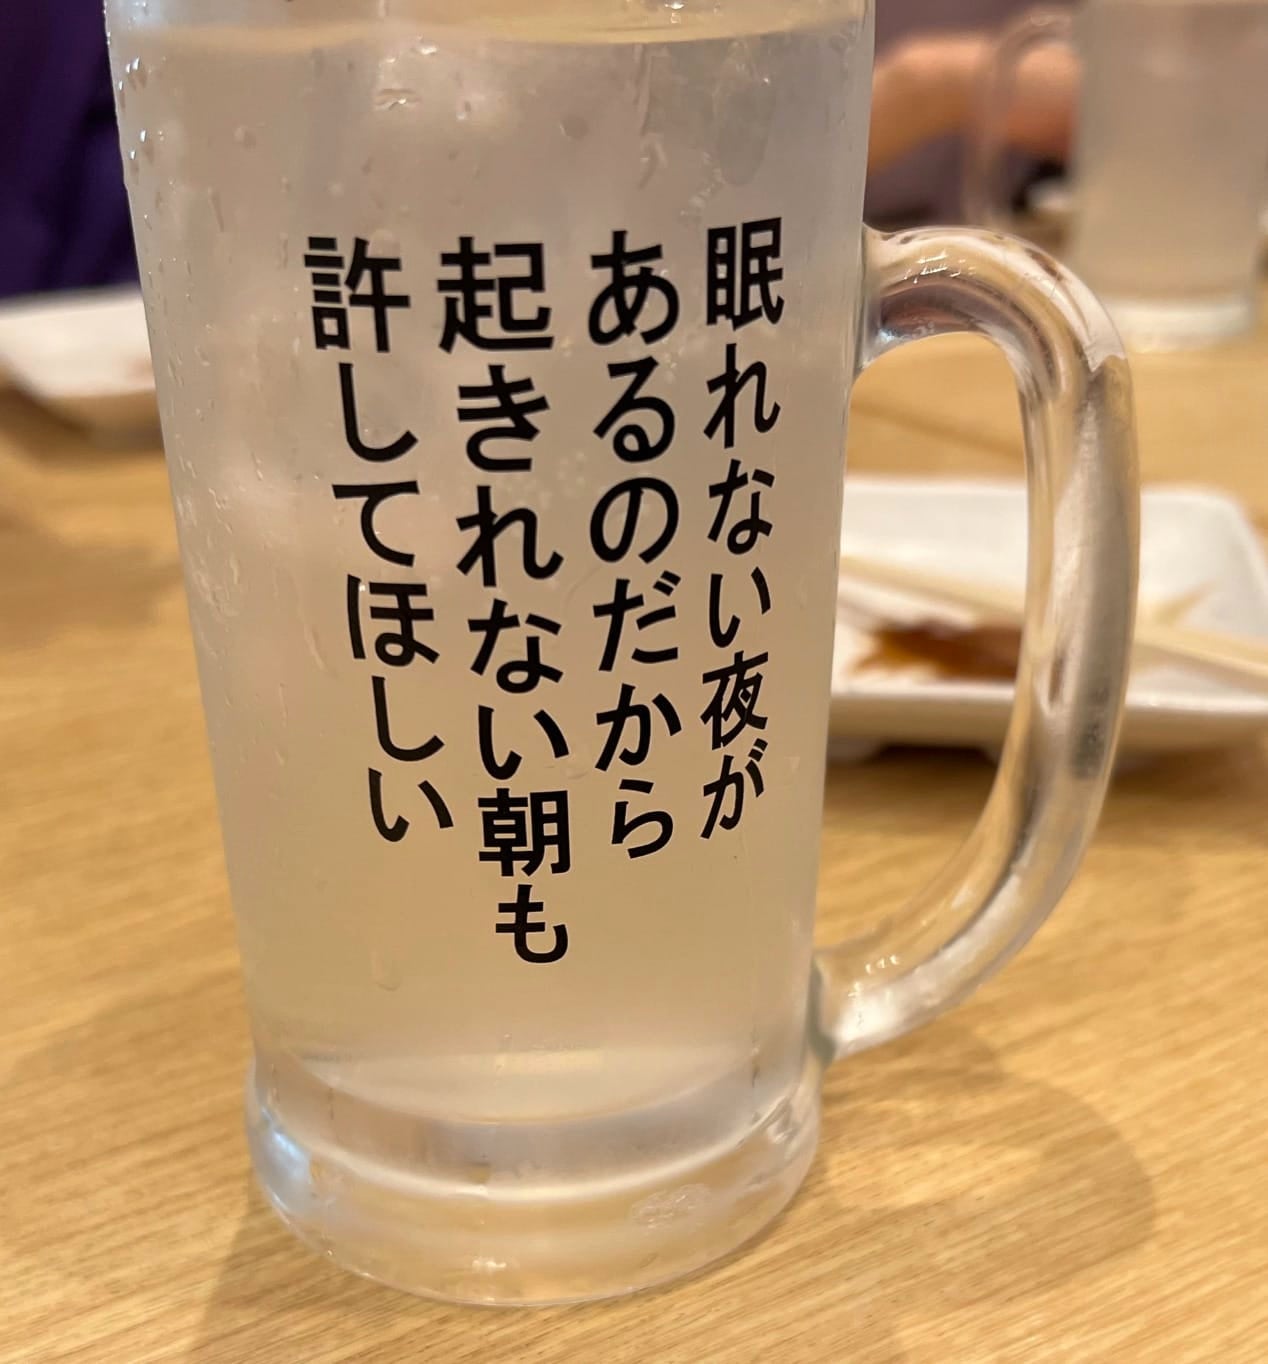 คำคมสุดโดนบนแก้วสายดื่ม นักดื่ม ร้านอาหารญี่ปุ่น